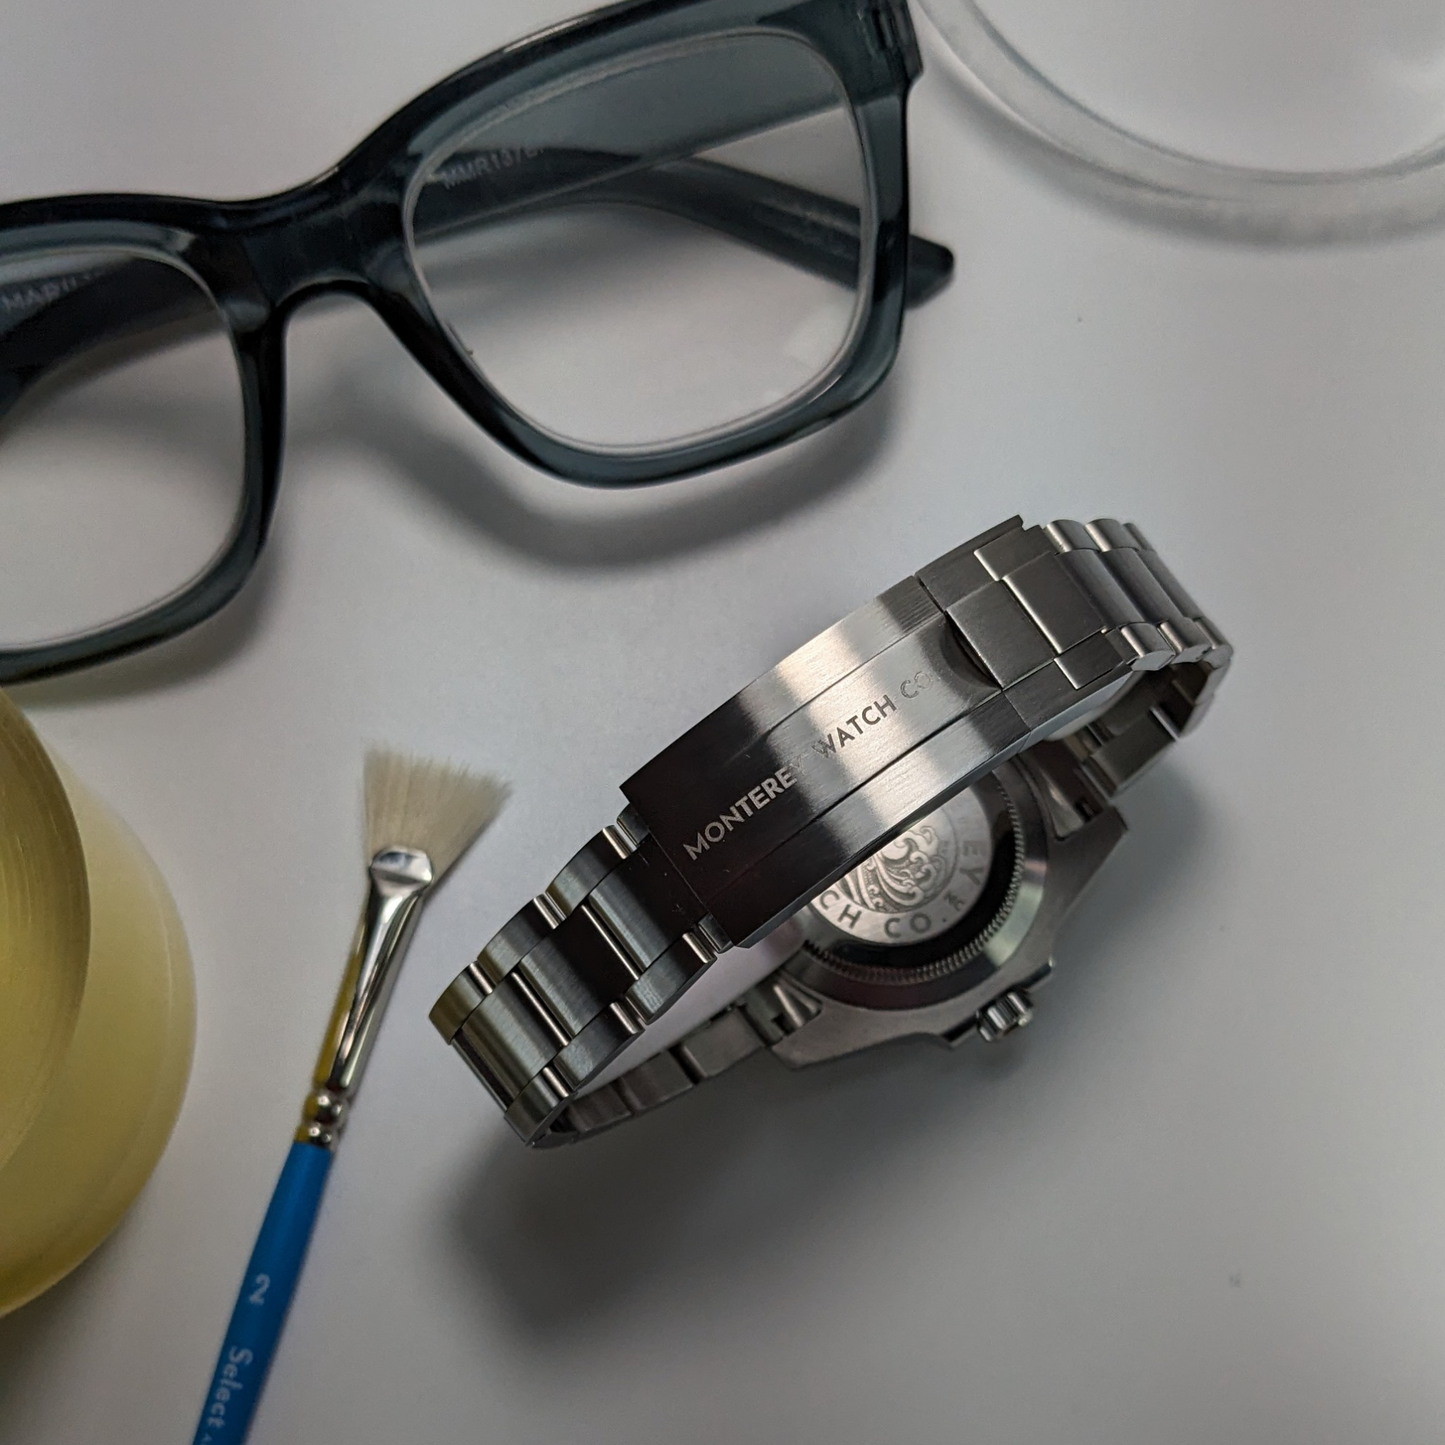 Sleek Blacktip GMT Blue Knight Luxury Watches - Monterey Watch Co